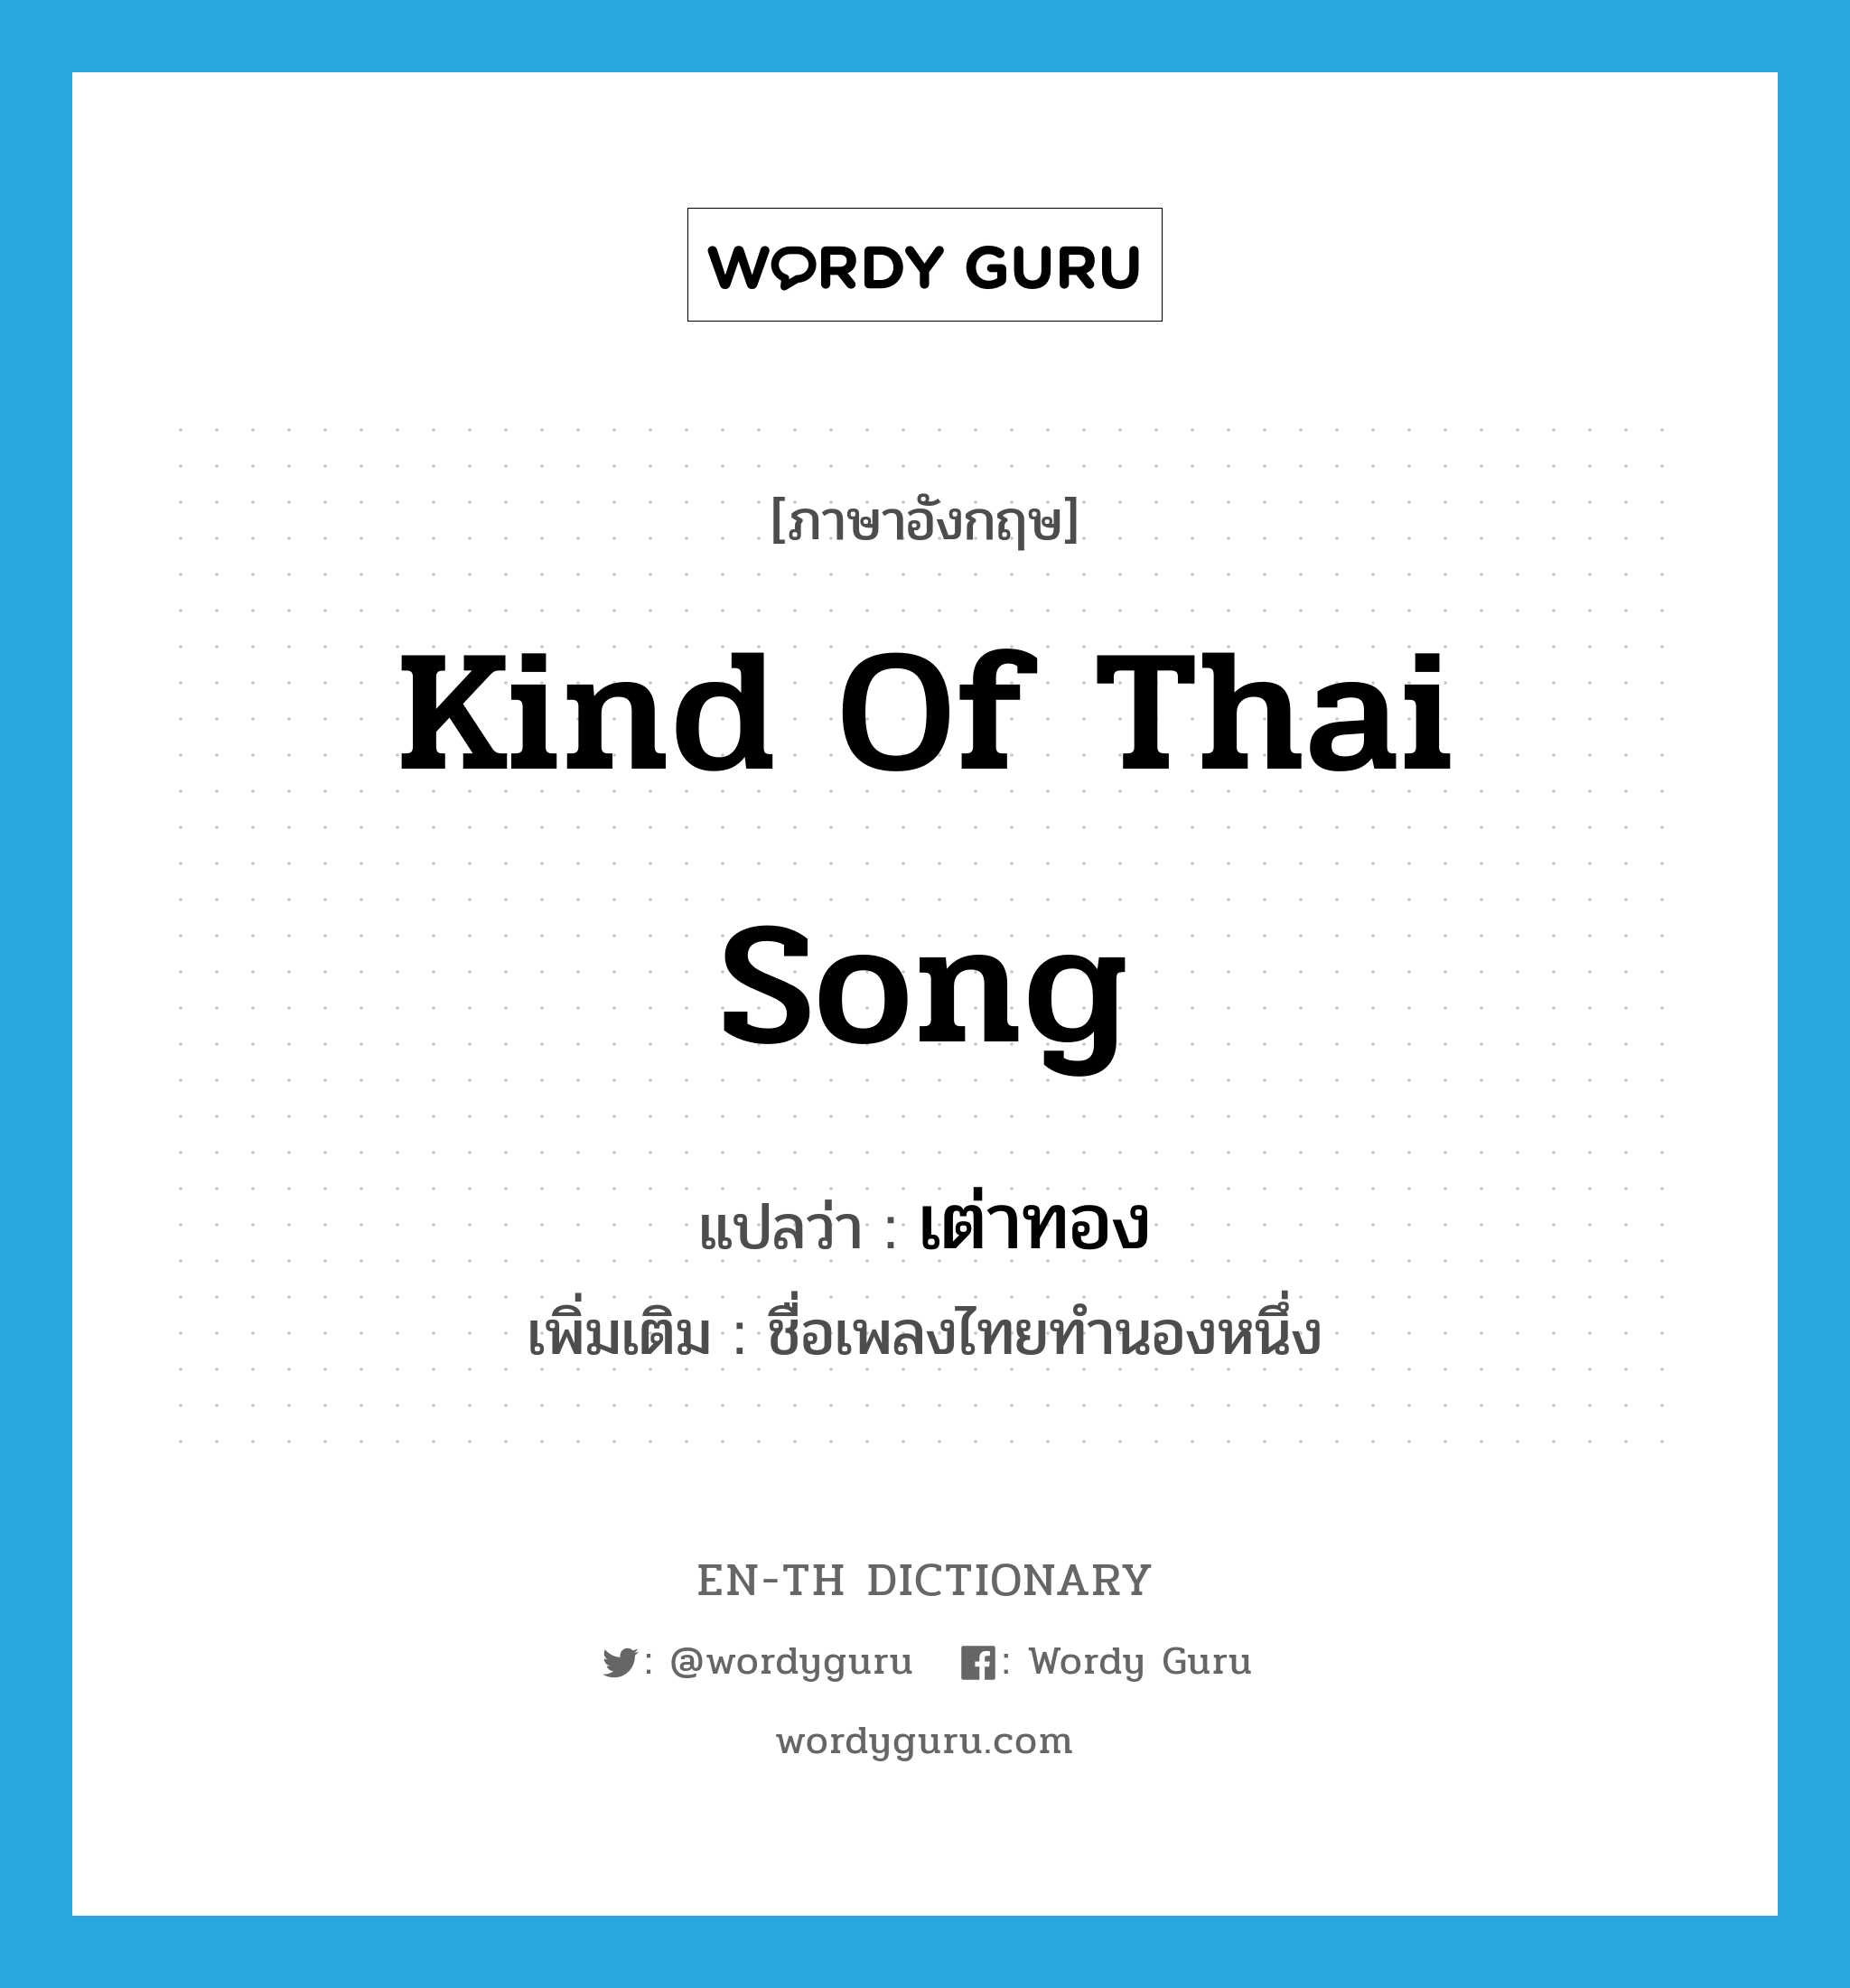 เต่าทอง ภาษาอังกฤษ?, คำศัพท์ภาษาอังกฤษ เต่าทอง แปลว่า kind of Thai song ประเภท N เพิ่มเติม ชื่อเพลงไทยทำนองหนึ่ง หมวด N